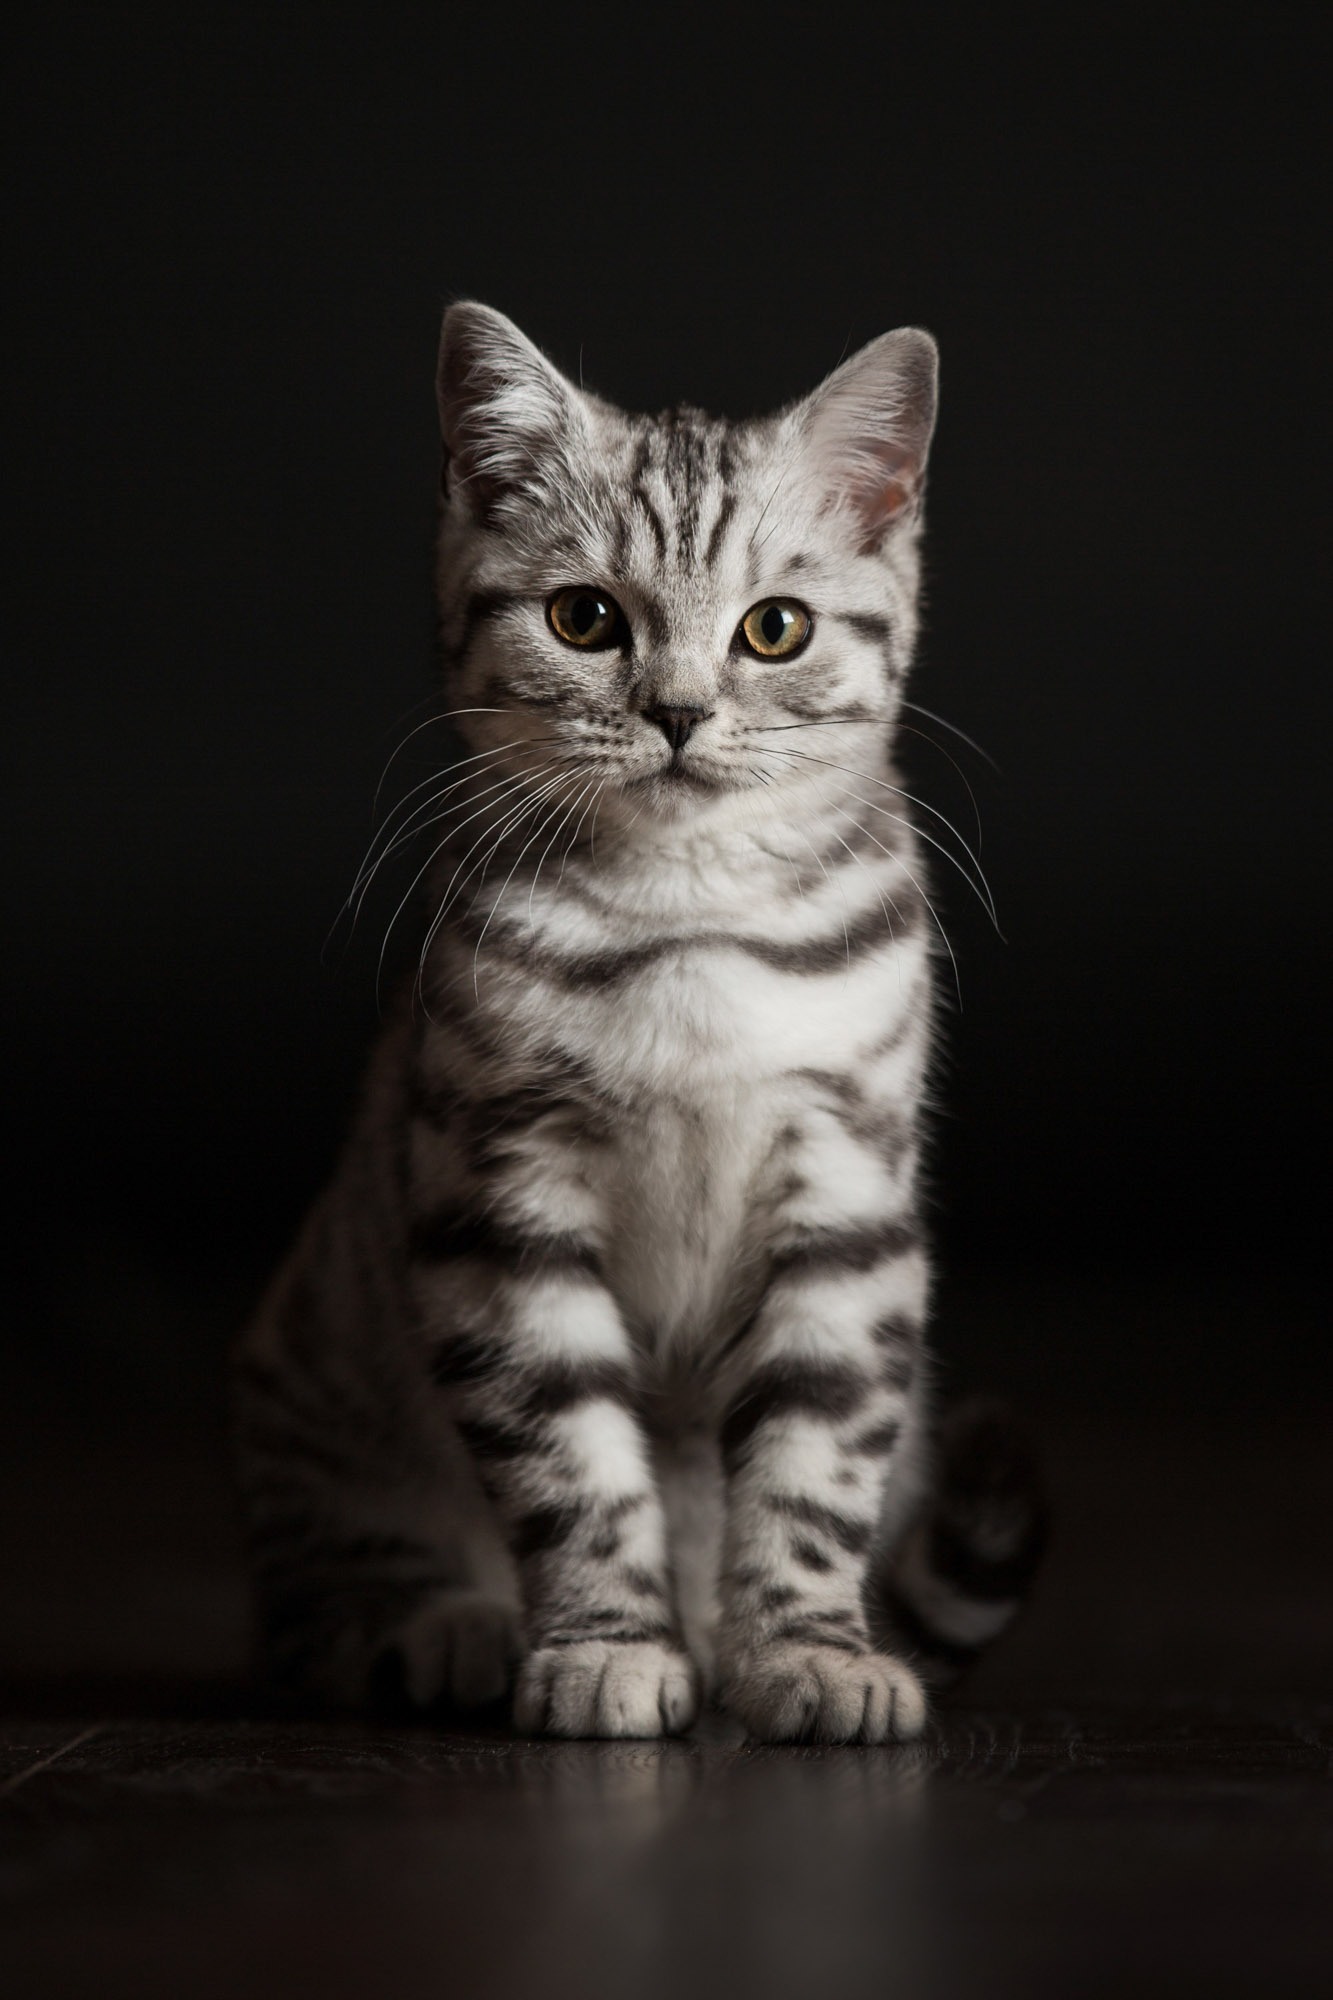 A cat photograph taken by Jonathan Addie, an Aberdeen based pet photographer.